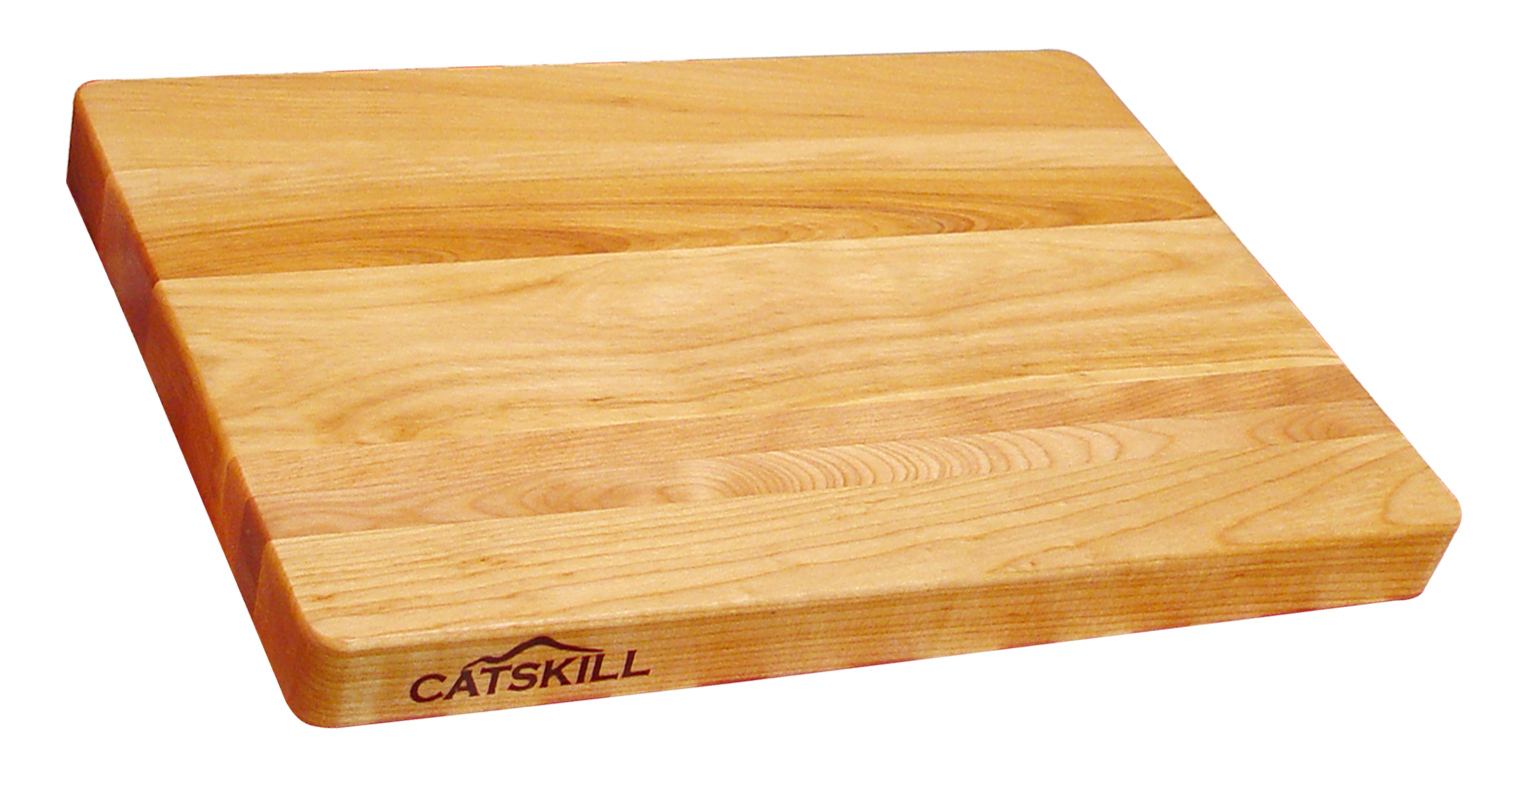 Catskill Craftsmen Meat Cutting Board